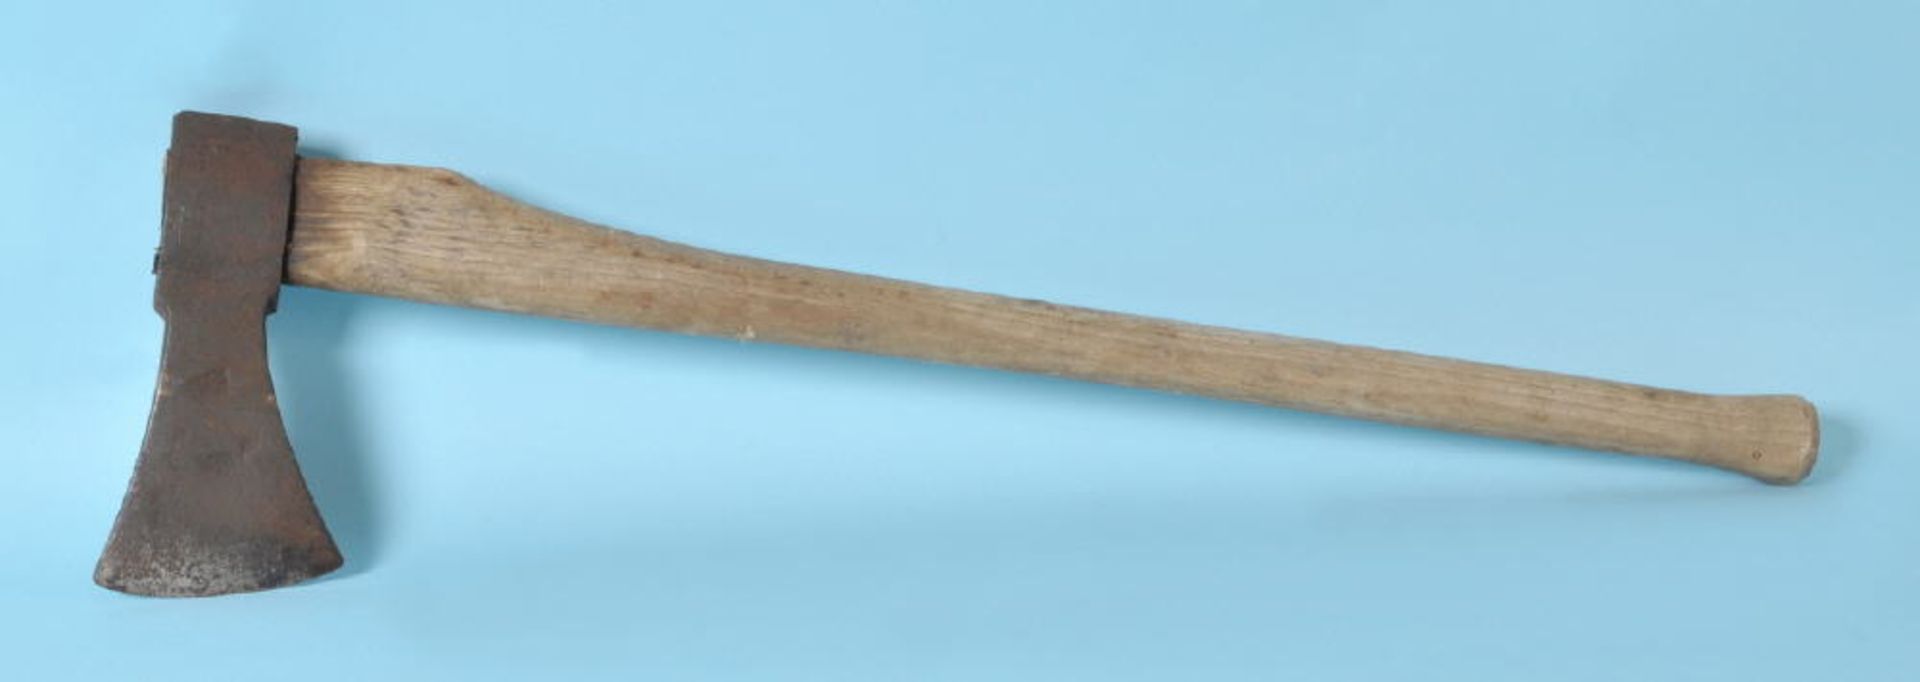 AxtSchmiedeeisen/Holz, L= 88 cm, mit Schmiedezeichen